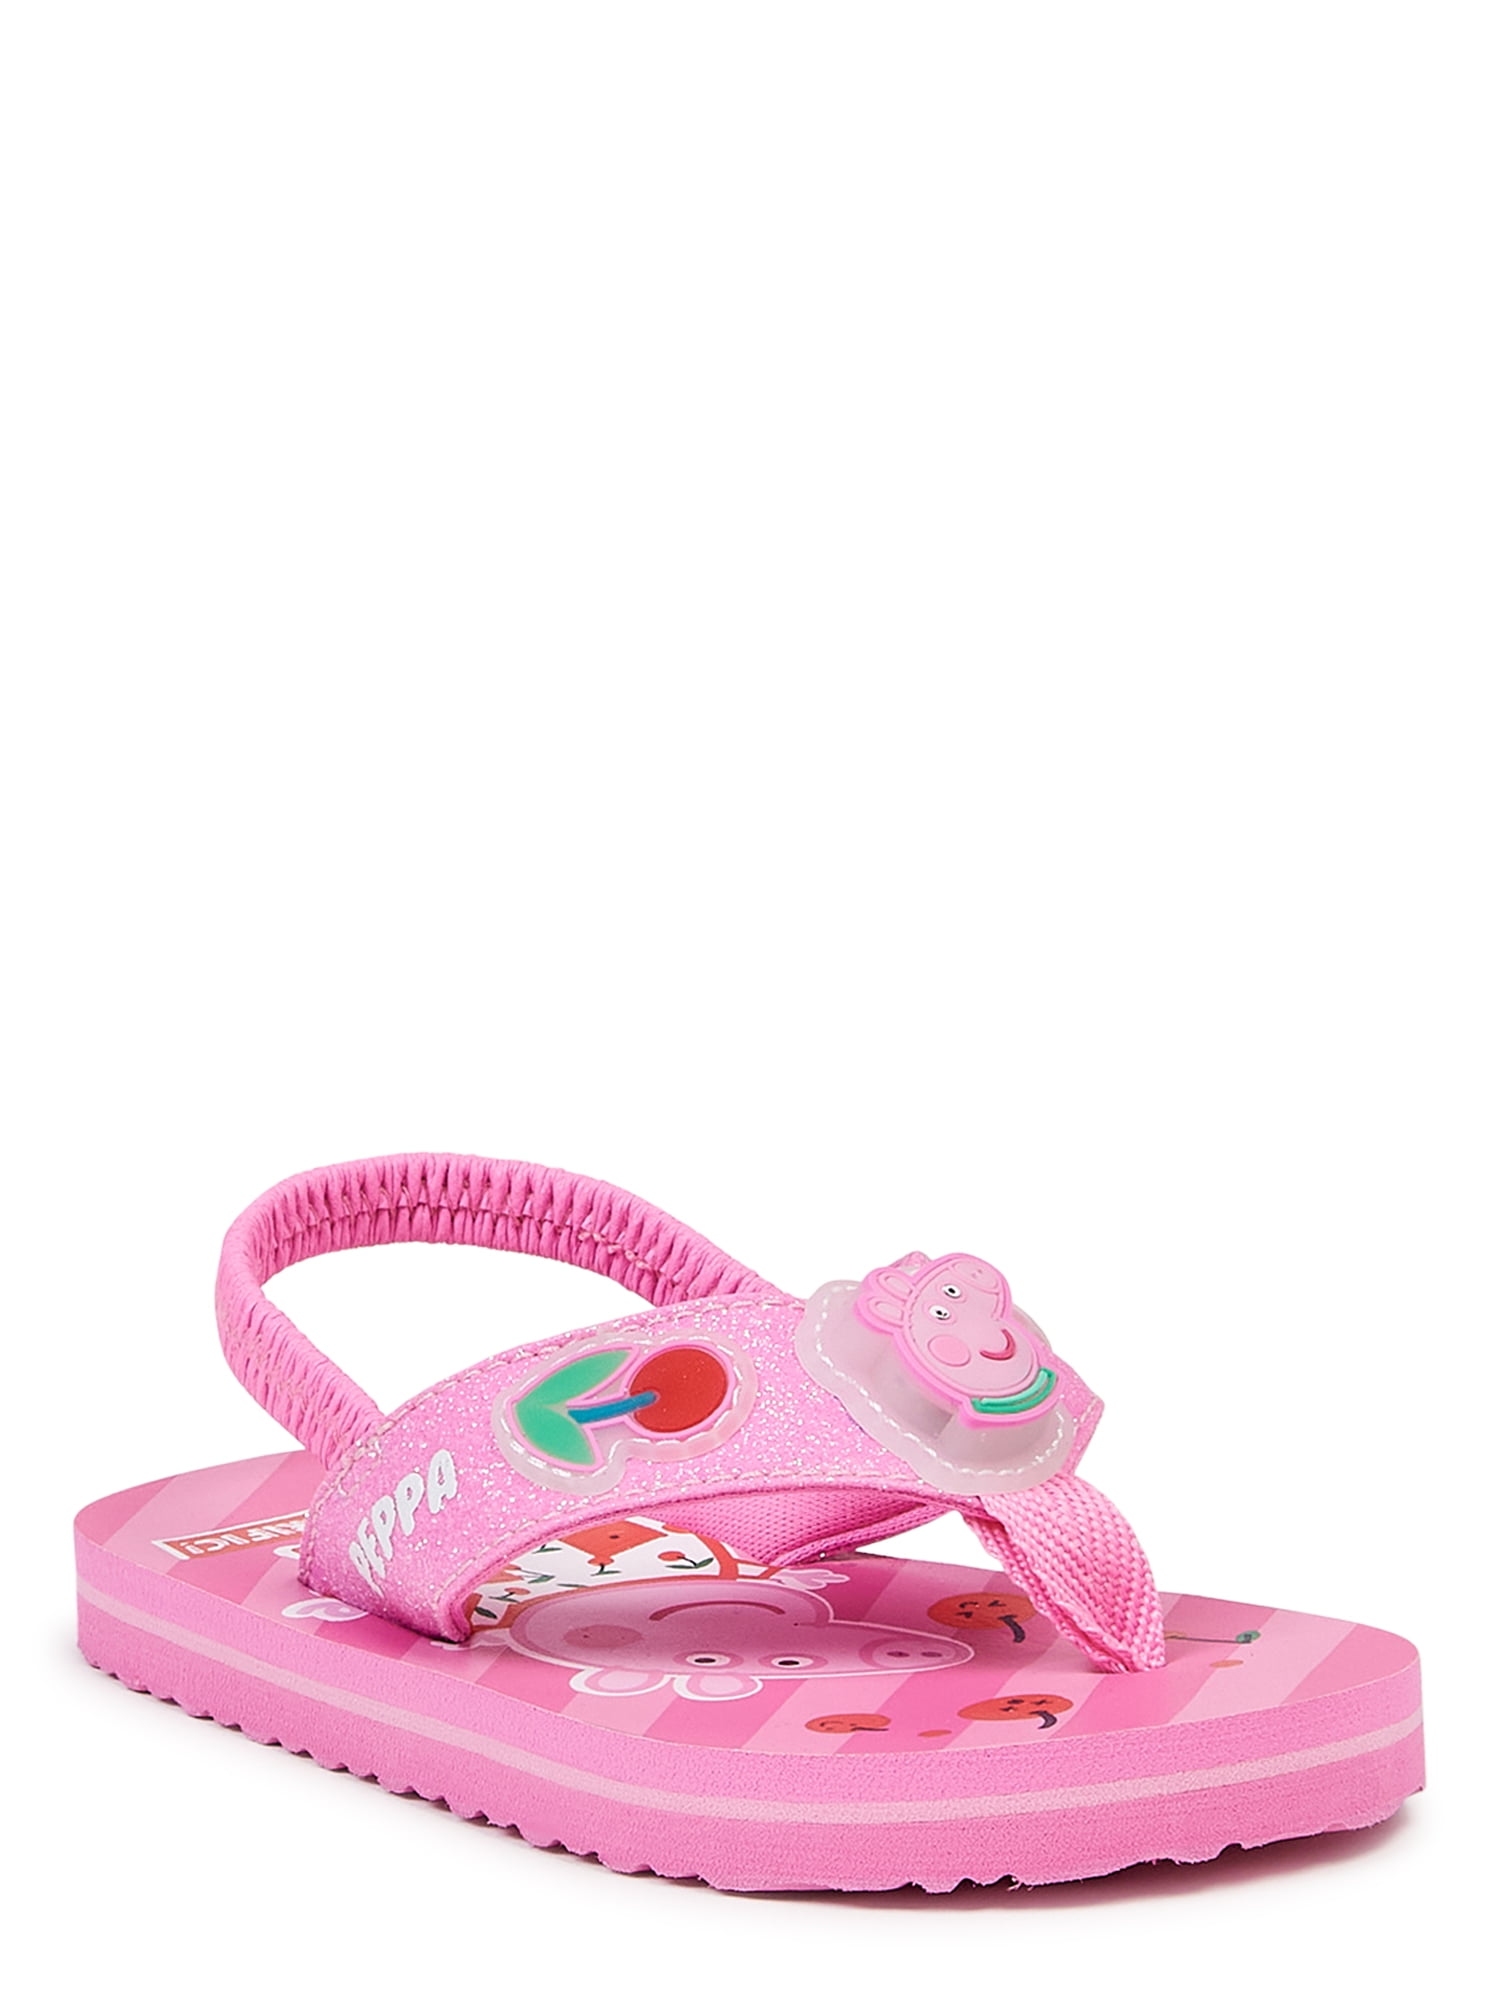 Wonder Nation Fur Slide Pink Sandals For Girls Size 2-3 UW 